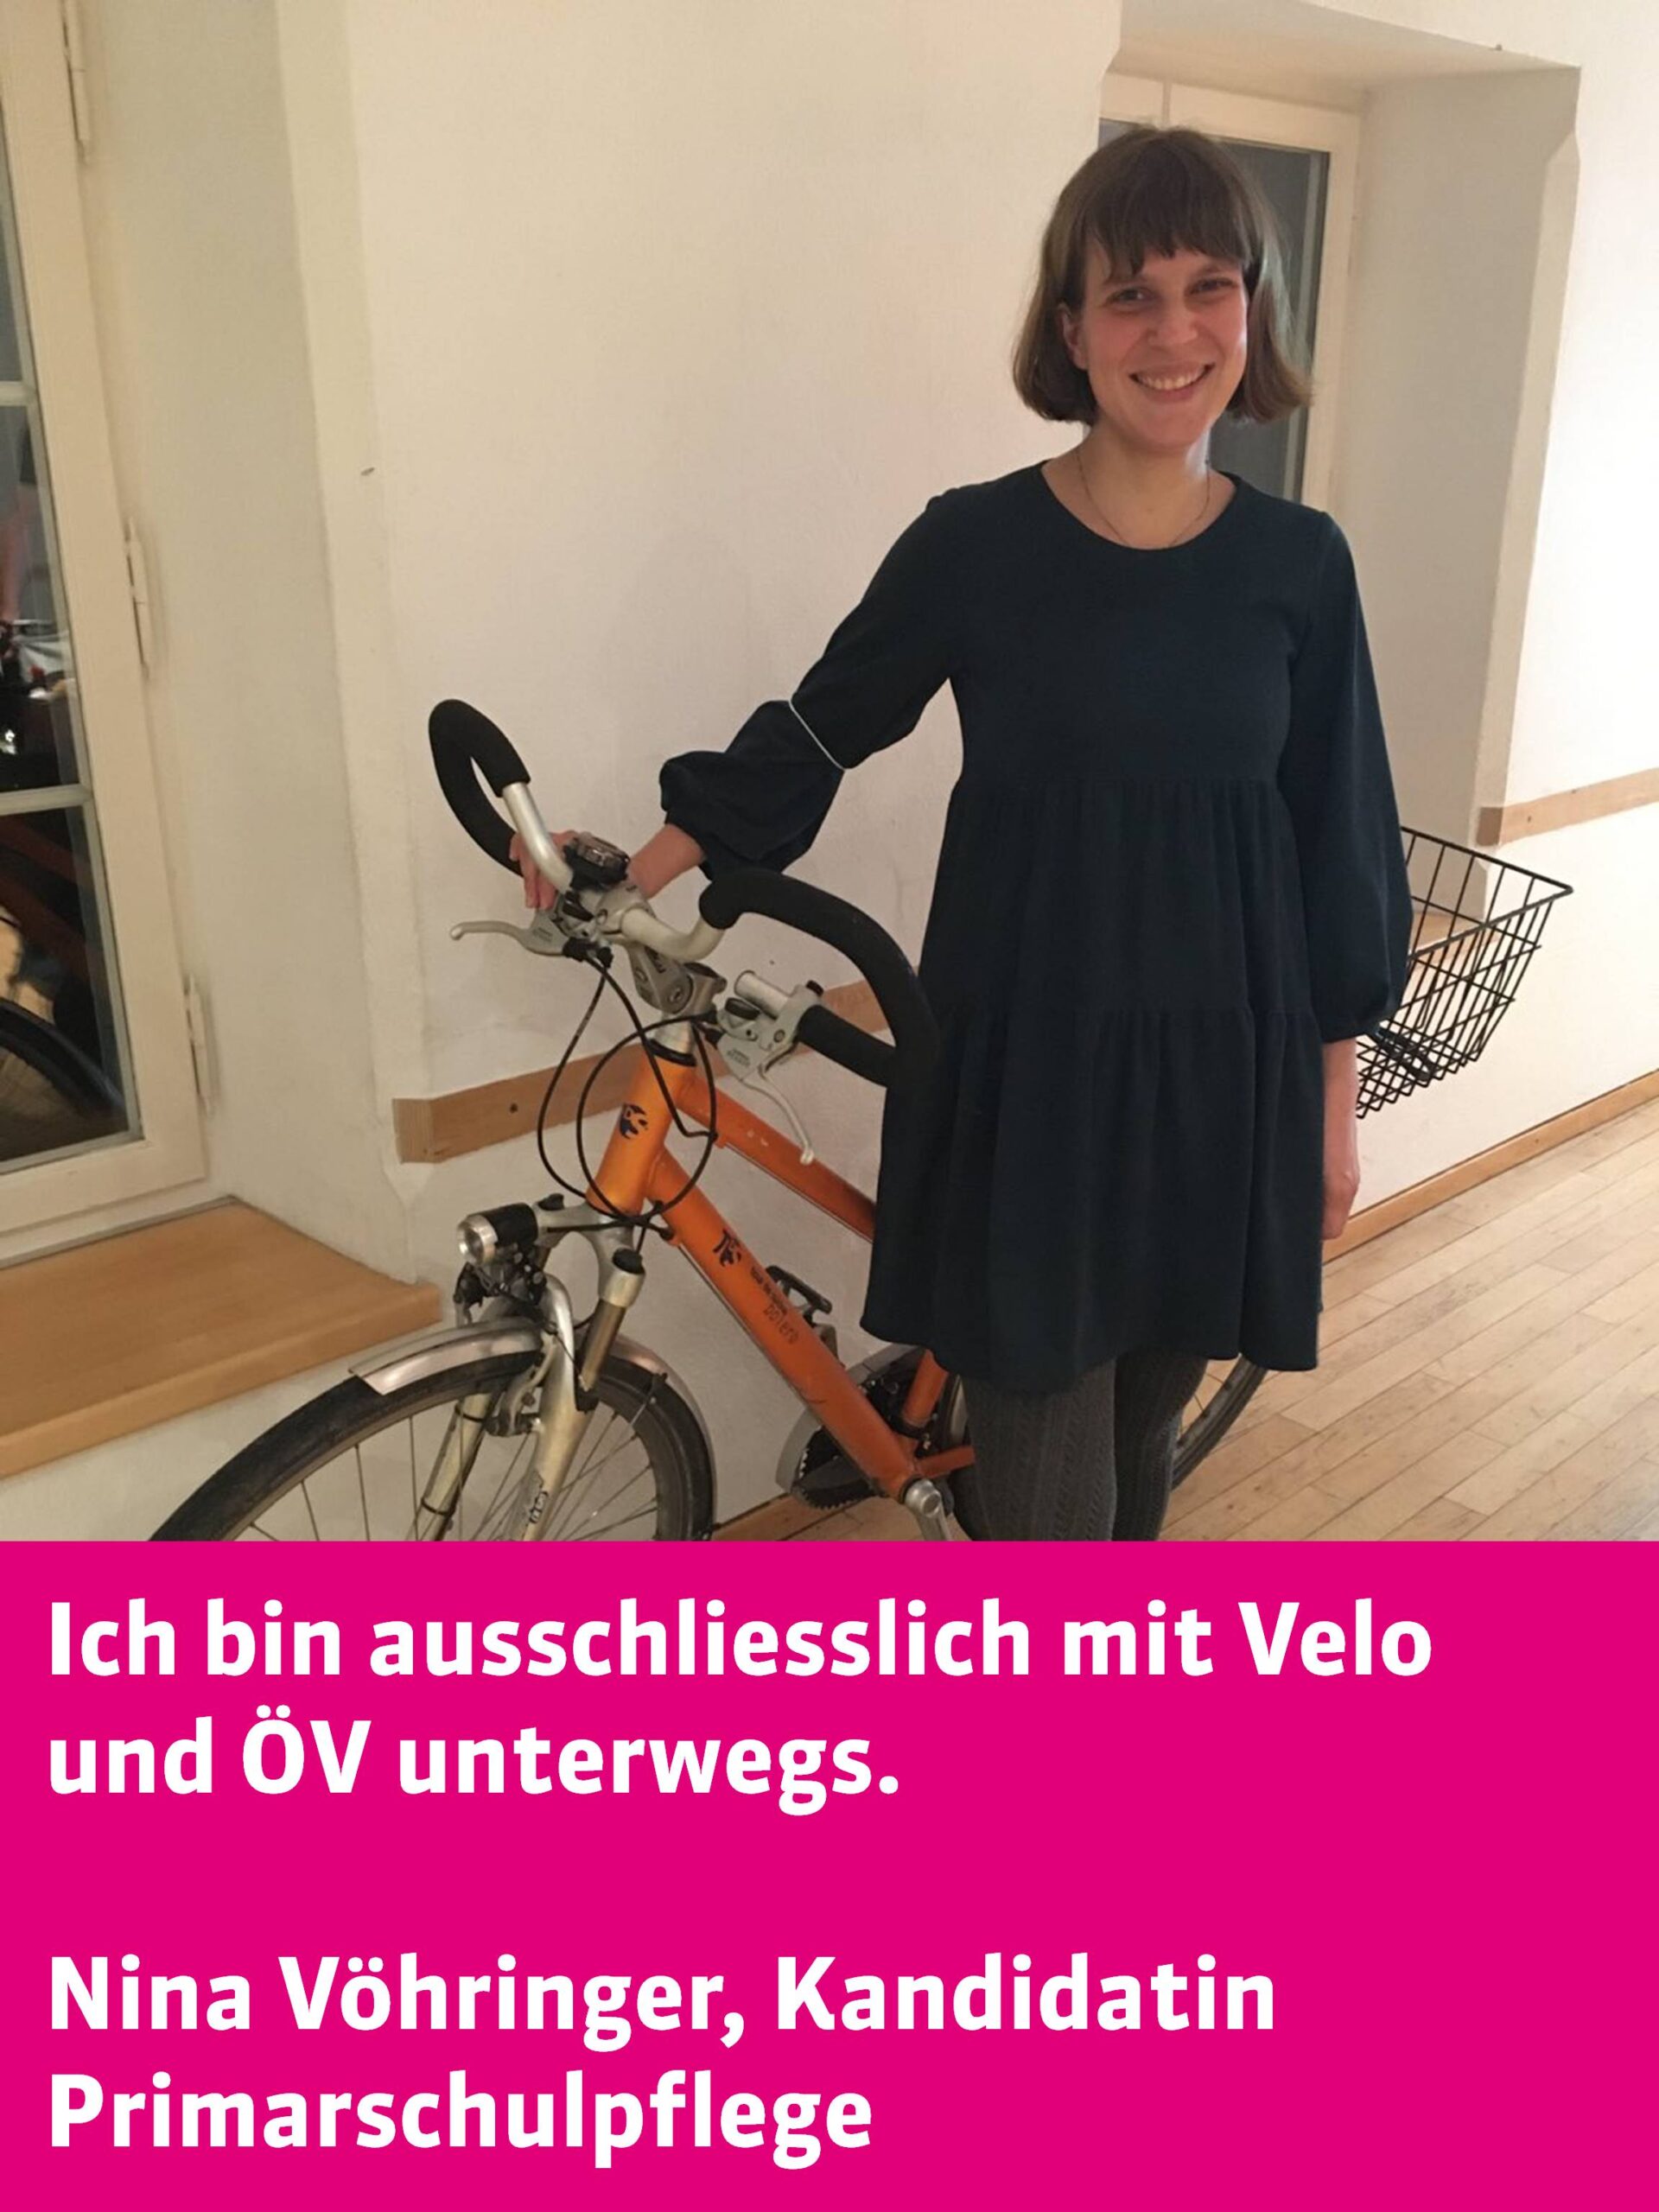 Umwelttipp Nina Vöhringer Velo